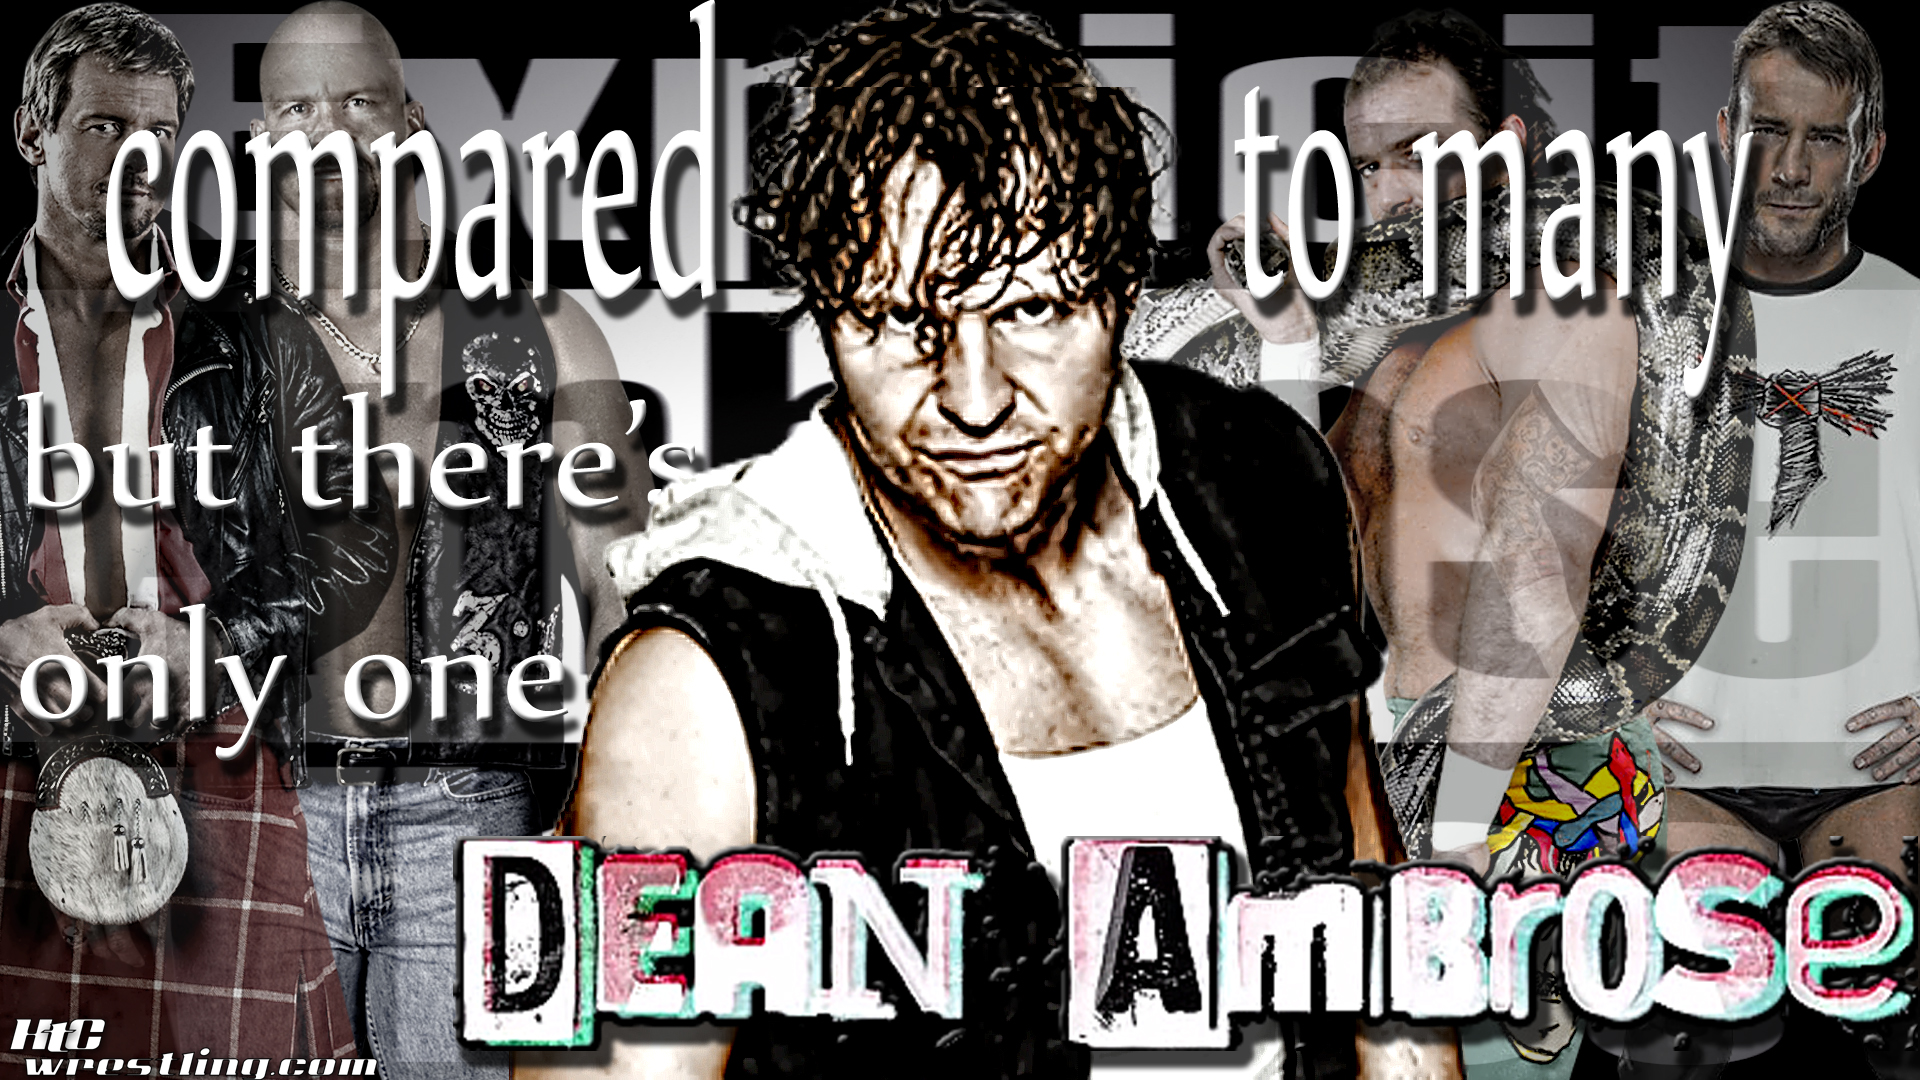 Dean Ambrose Wallpaper X